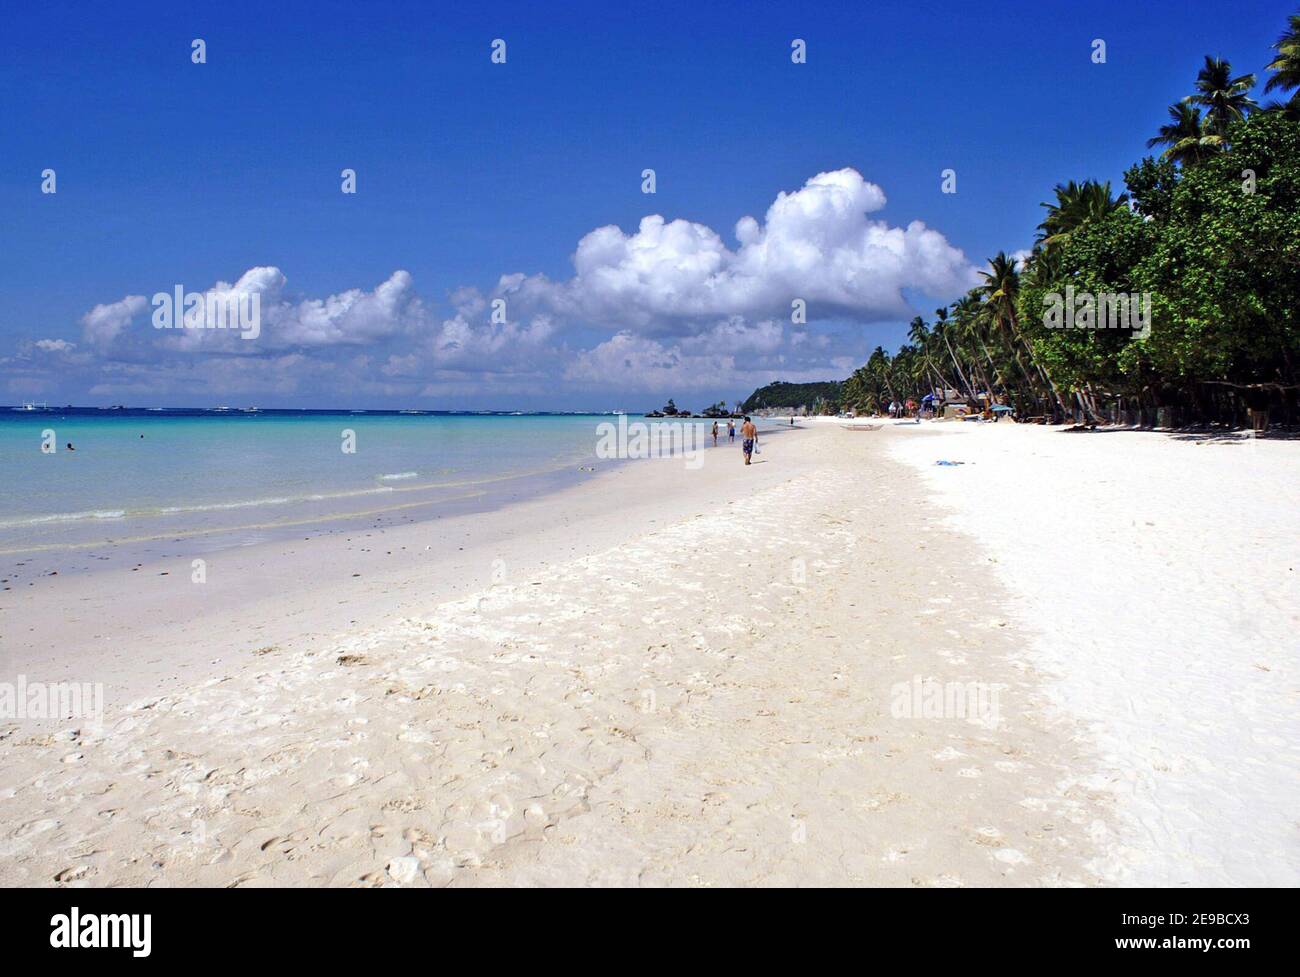 White Beach sull'isola resort di Boracay, Filippine, nel Visayas Occidentale. Preso nel 2005, l'isola, così come White Beach avevano attraversato le fasi di sviluppo del turismo a partire dal mercato dei backpacker negli anni '80 e '90 e poi raggiungere il turismo eccessivo entro il 2018. Le belle spiagge e l'isola tropicale sono state chiuse per la riabilitazione e il riqualificazione. Un tempo lussureggiante isola paradisiaca era diventata inconcitata in problemi ambientali, culturali e sociali che hanno portato alla necessità di un nuovo sviluppo, ma sostenibile. Il governo ha deciso dopo una chiusura di sei mesi che si aprirebbe in fasi. Foto Stock